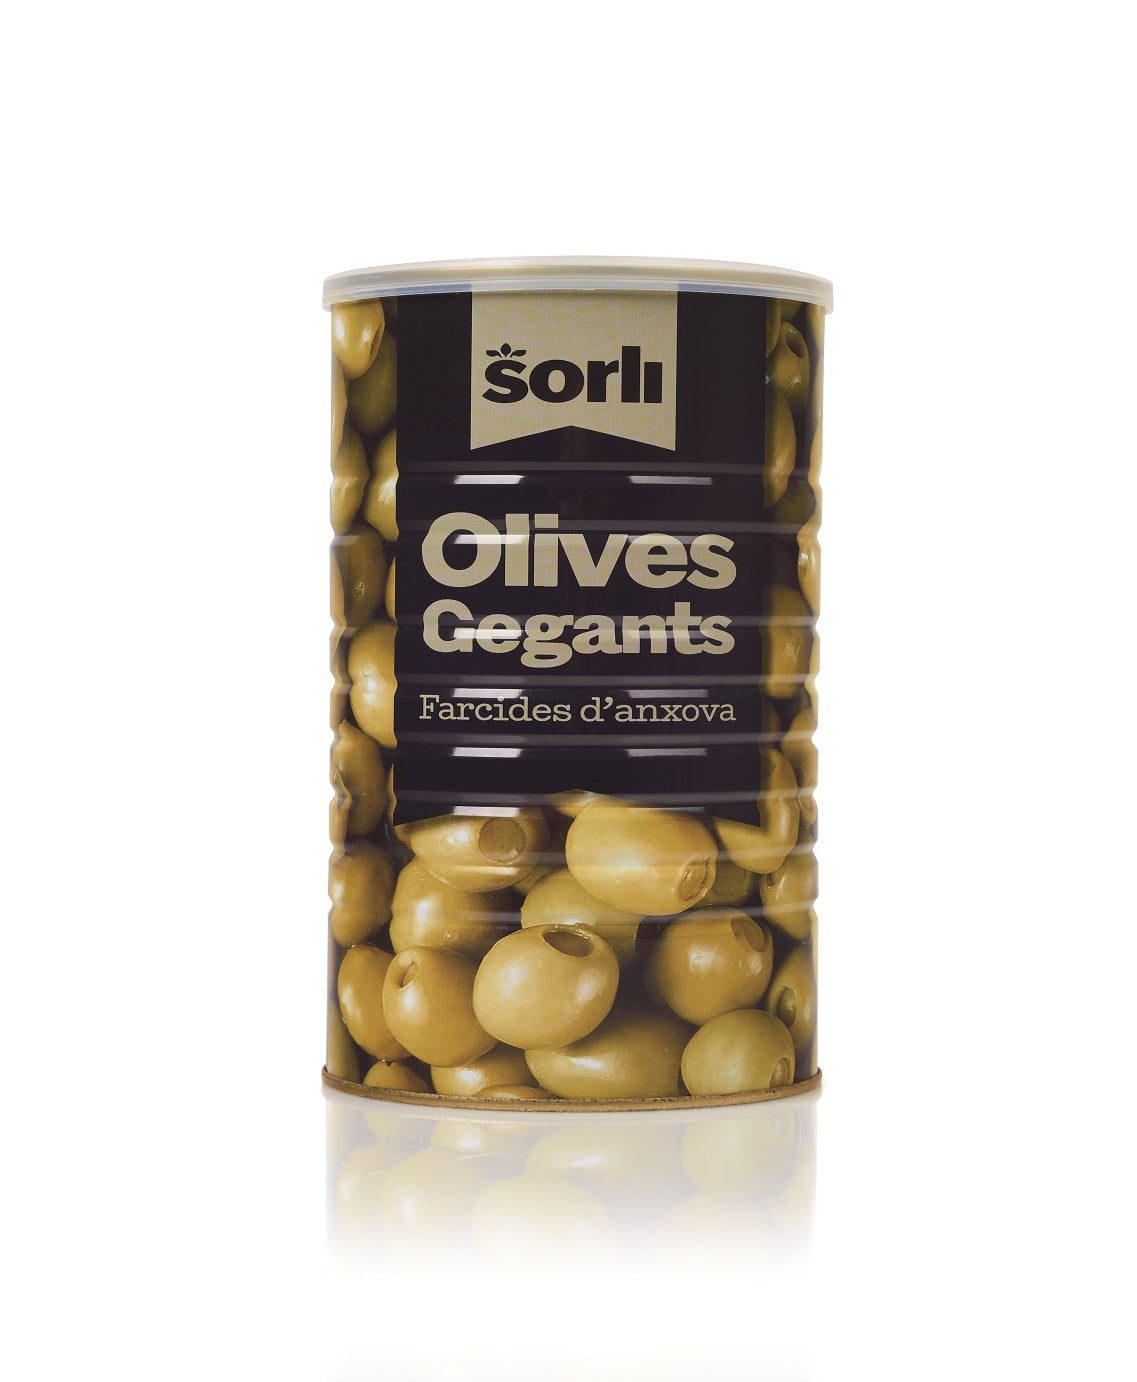 Marca Sorli: Olives gegants